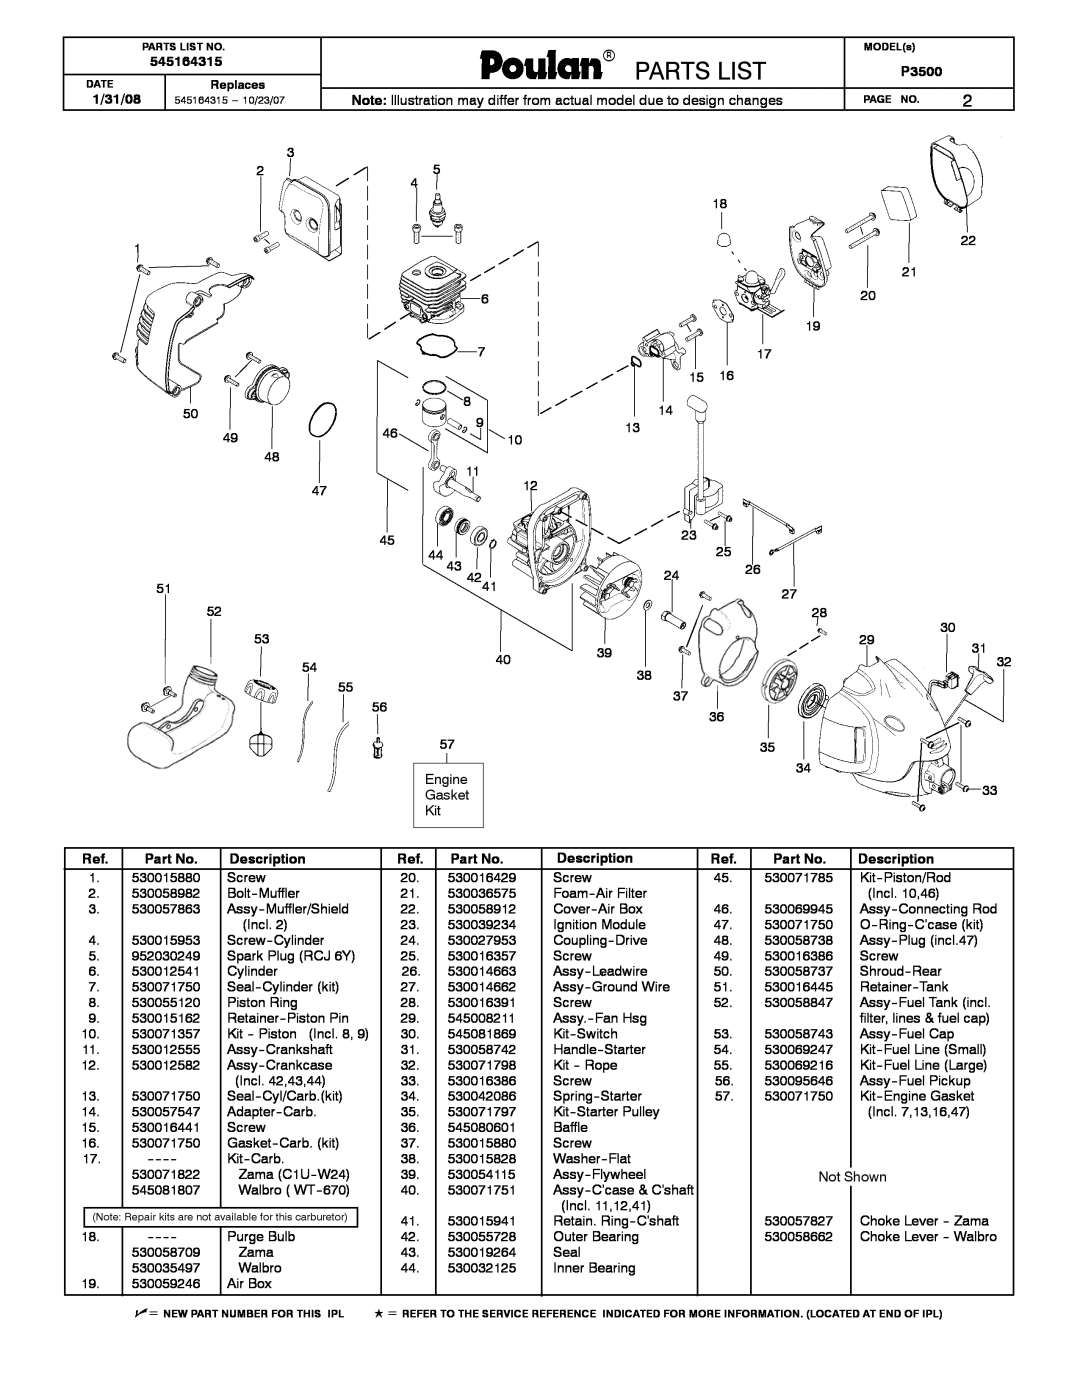 Poulan 545164315 manual Poulan, Partslist, Parts List, 1/31/08, P3500, Description 